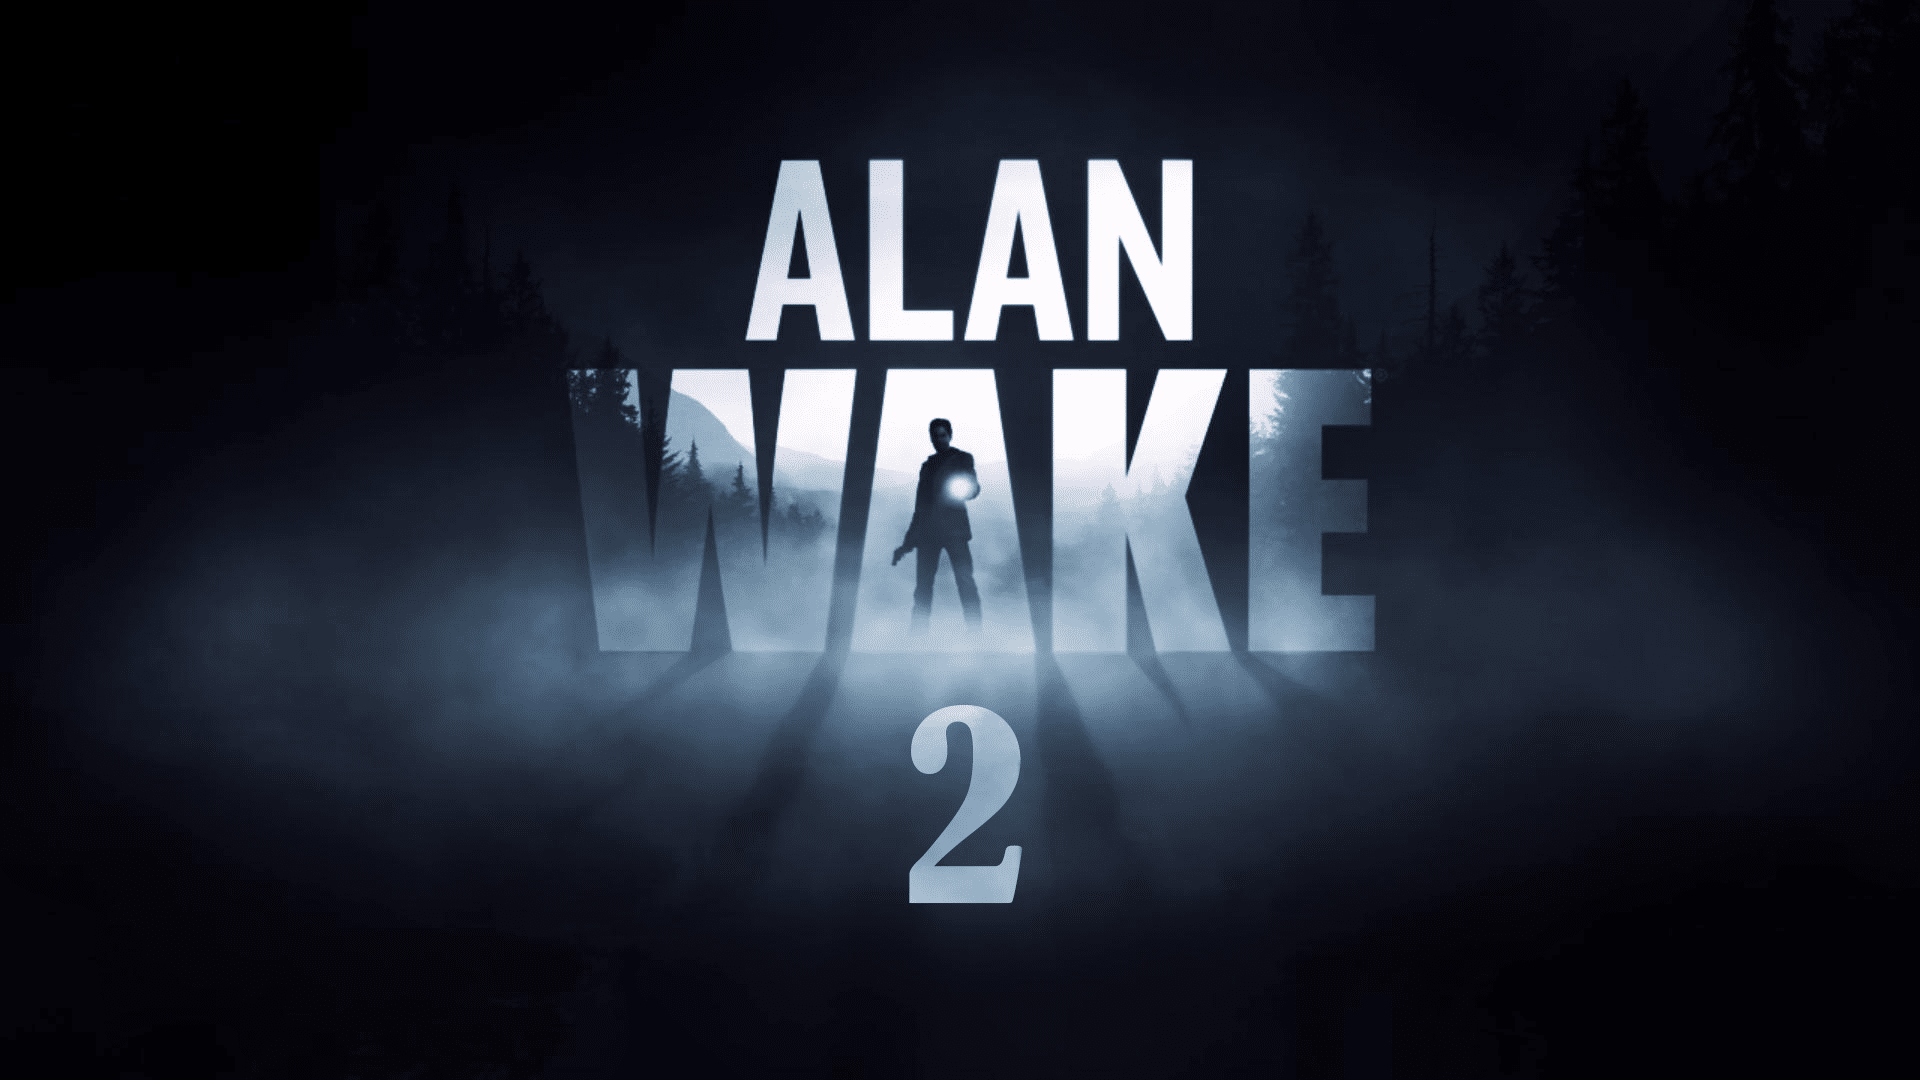 Alan Wake for mac download free